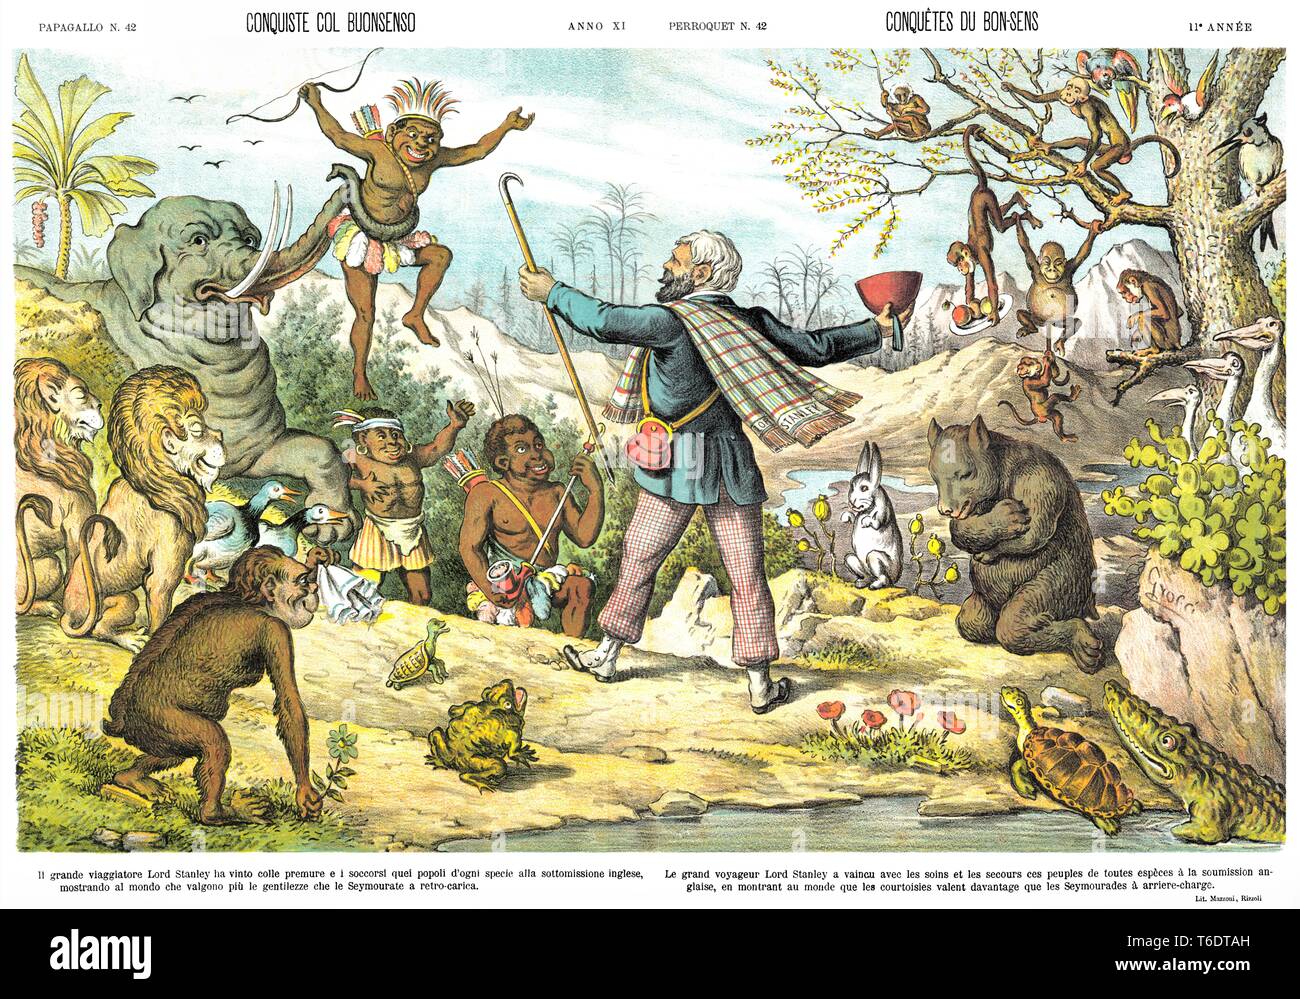 Conquiste di senso comune da cartoon satirica settimanale Il Papagallo 1883 Foto Stock